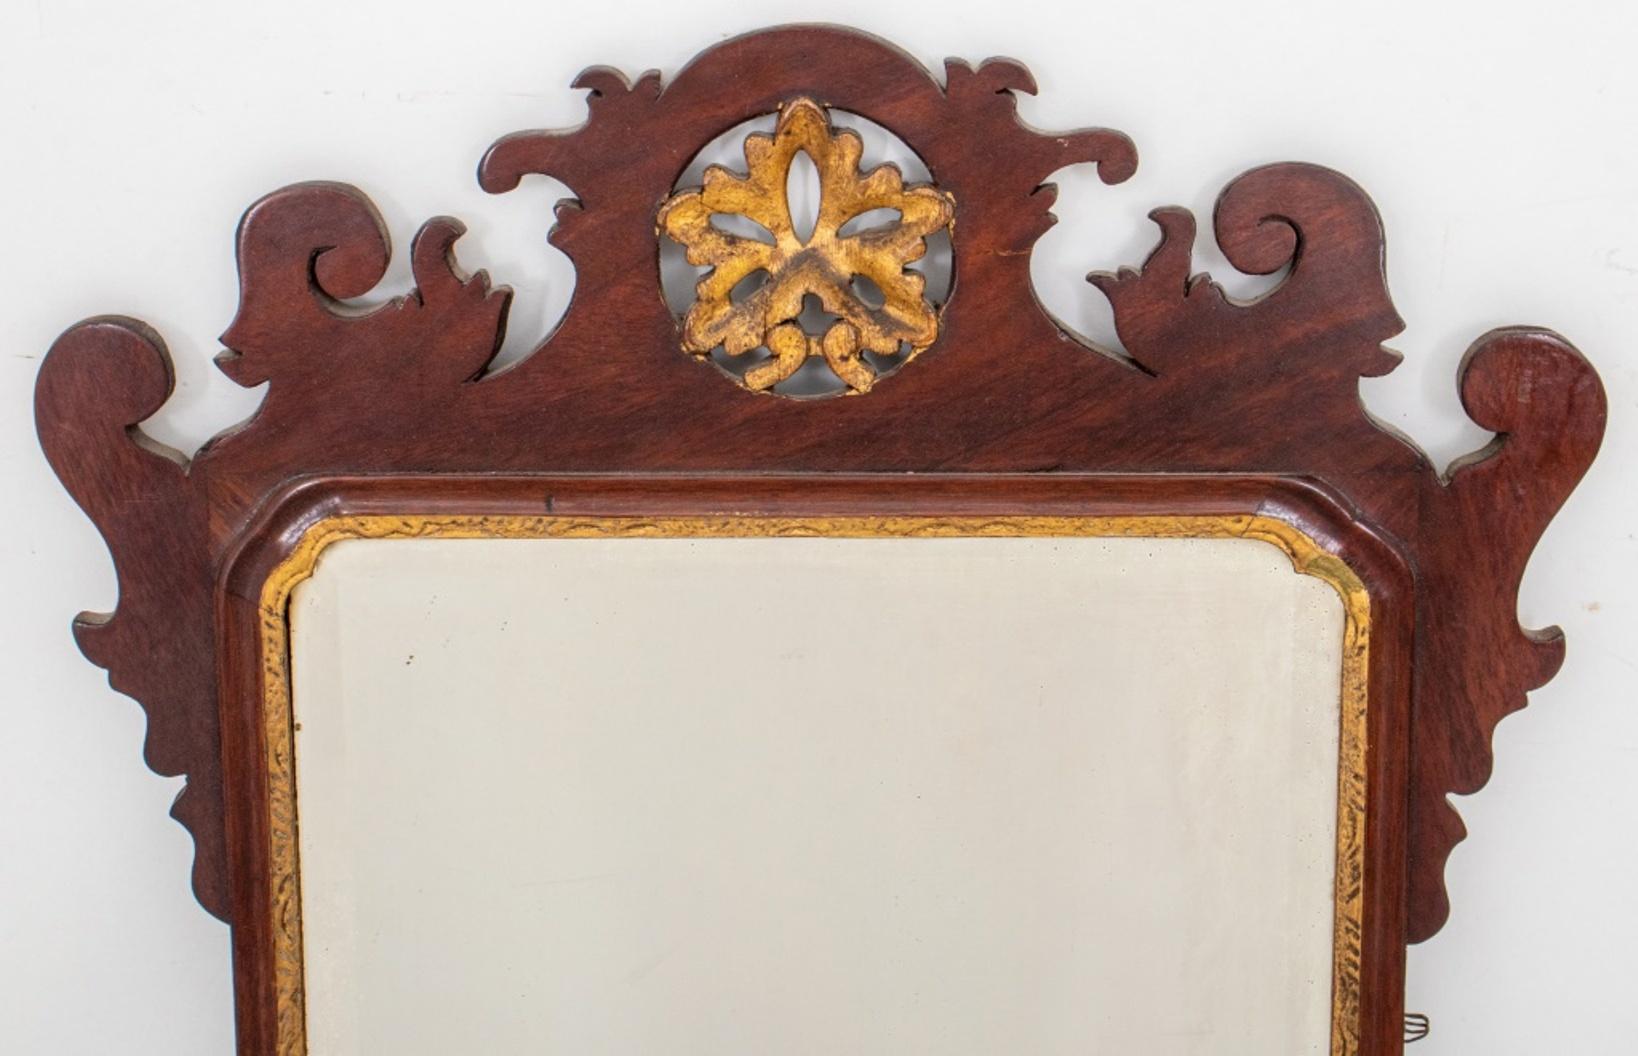 Amerikanische Chippendale-Stil Spiegel, Paket vergoldet und Mahagoni, zentriert eine rechteckige abgeschrägte Spiegelplatte.

Abmessungen des Spiegels: 24